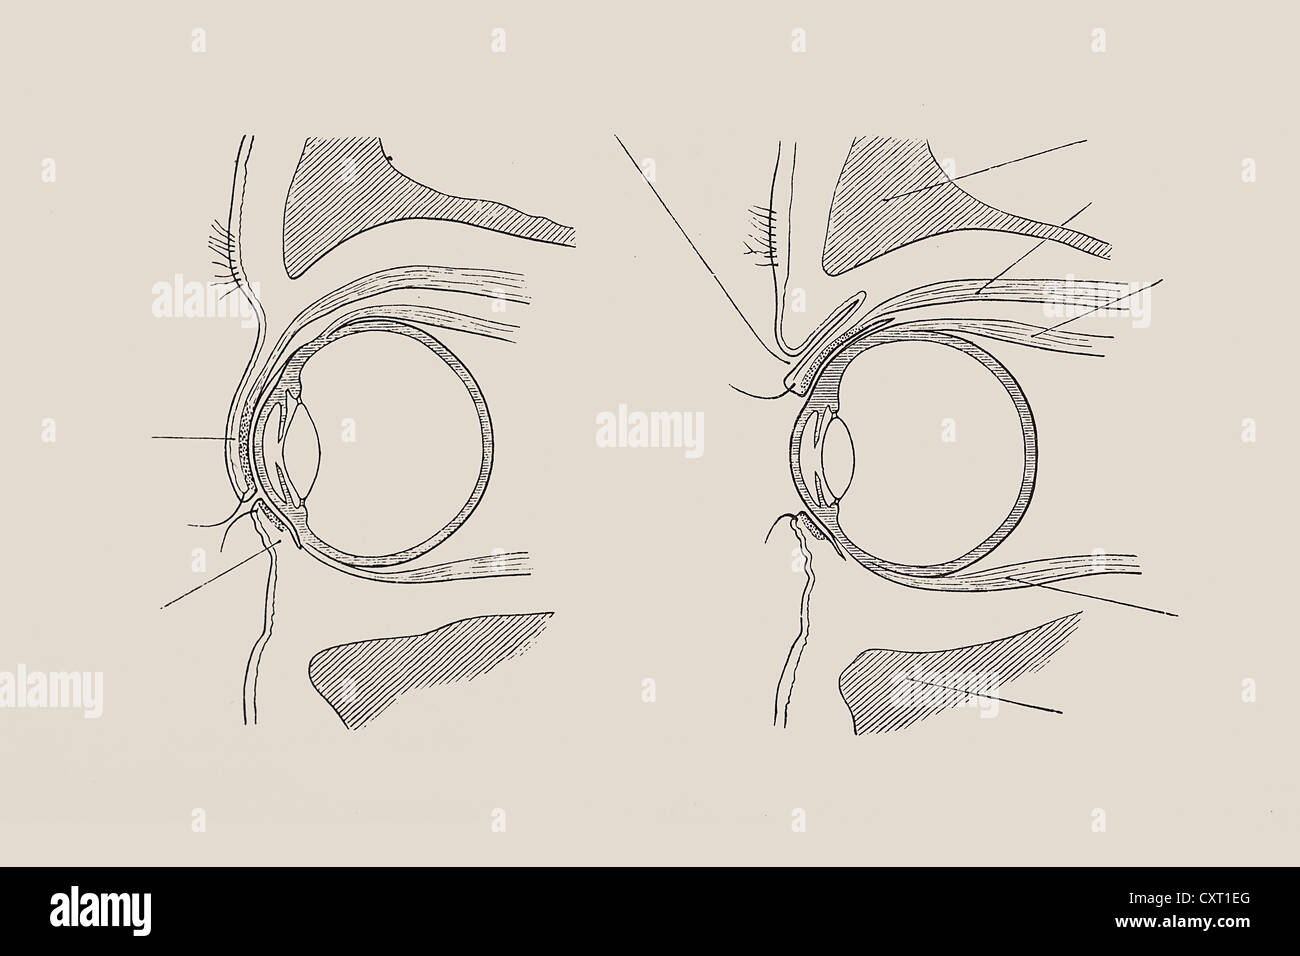 Vue en coupe de l'œil humain, illustration anatomique Banque D'Images